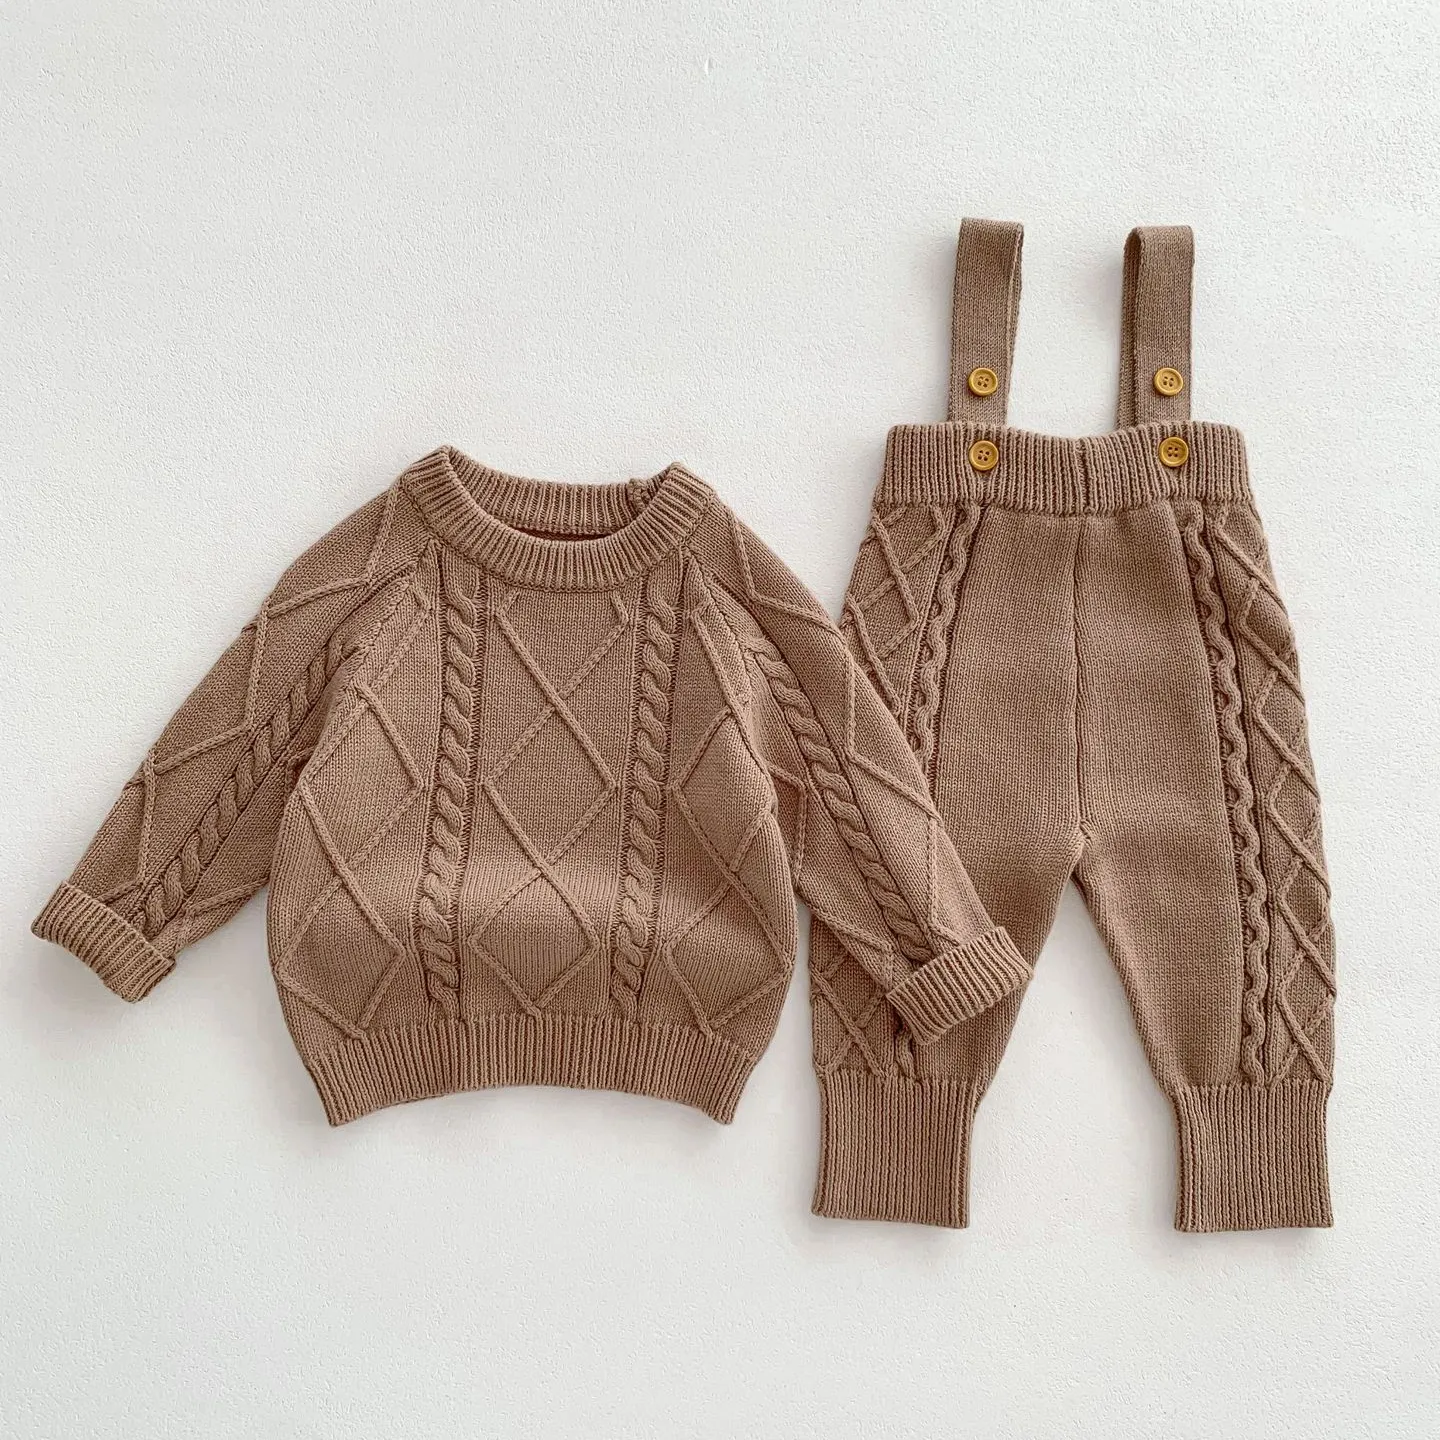 Customized Spring Babi 100% Organic Cotton Baby Unisex Clothing Set Sweater Pants Knit Set Baby